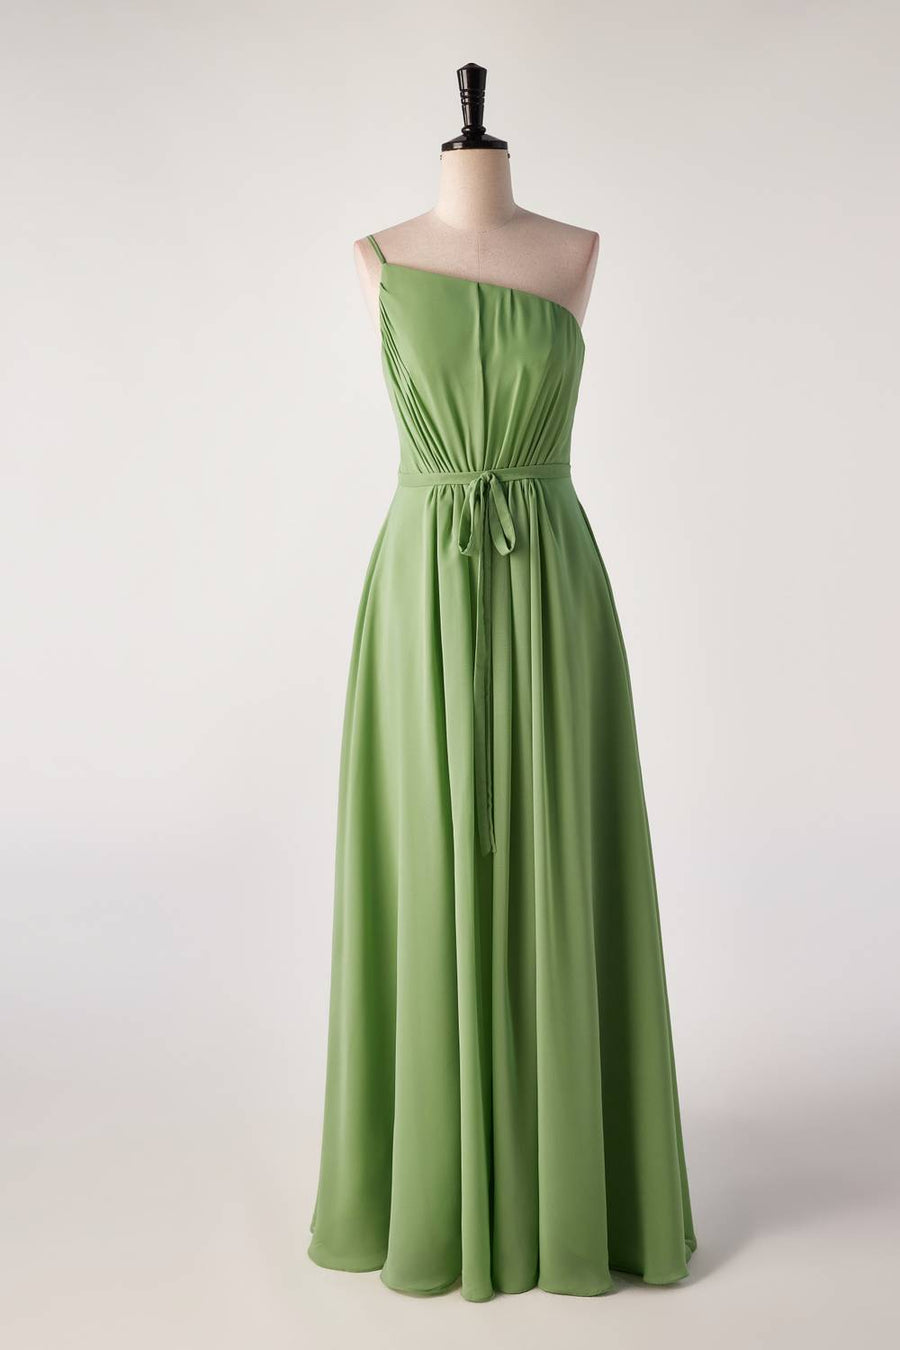 One Shoulder Matcha Green Long Bridesmaid Dress with Sash